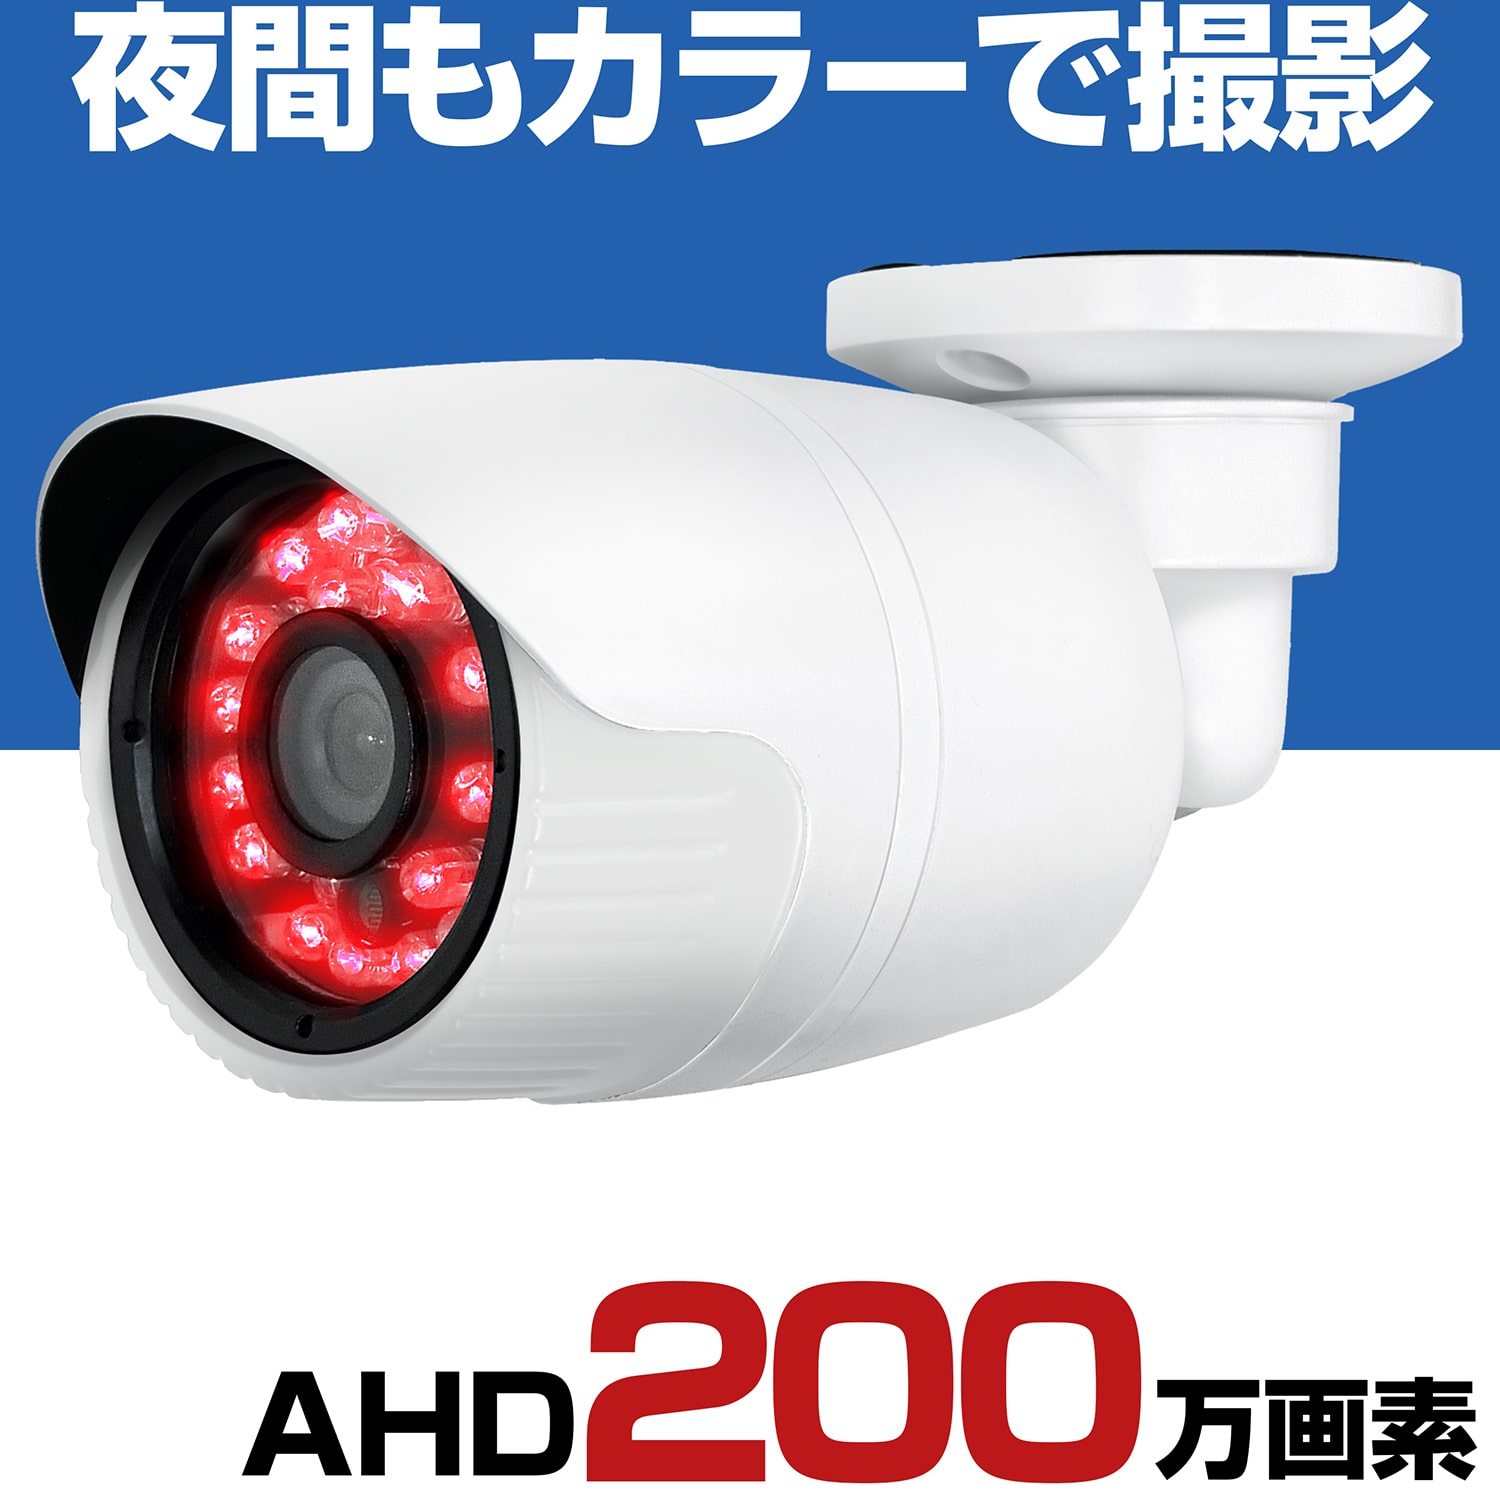 防犯カメラ 屋外 有線 家庭用 AHD 200